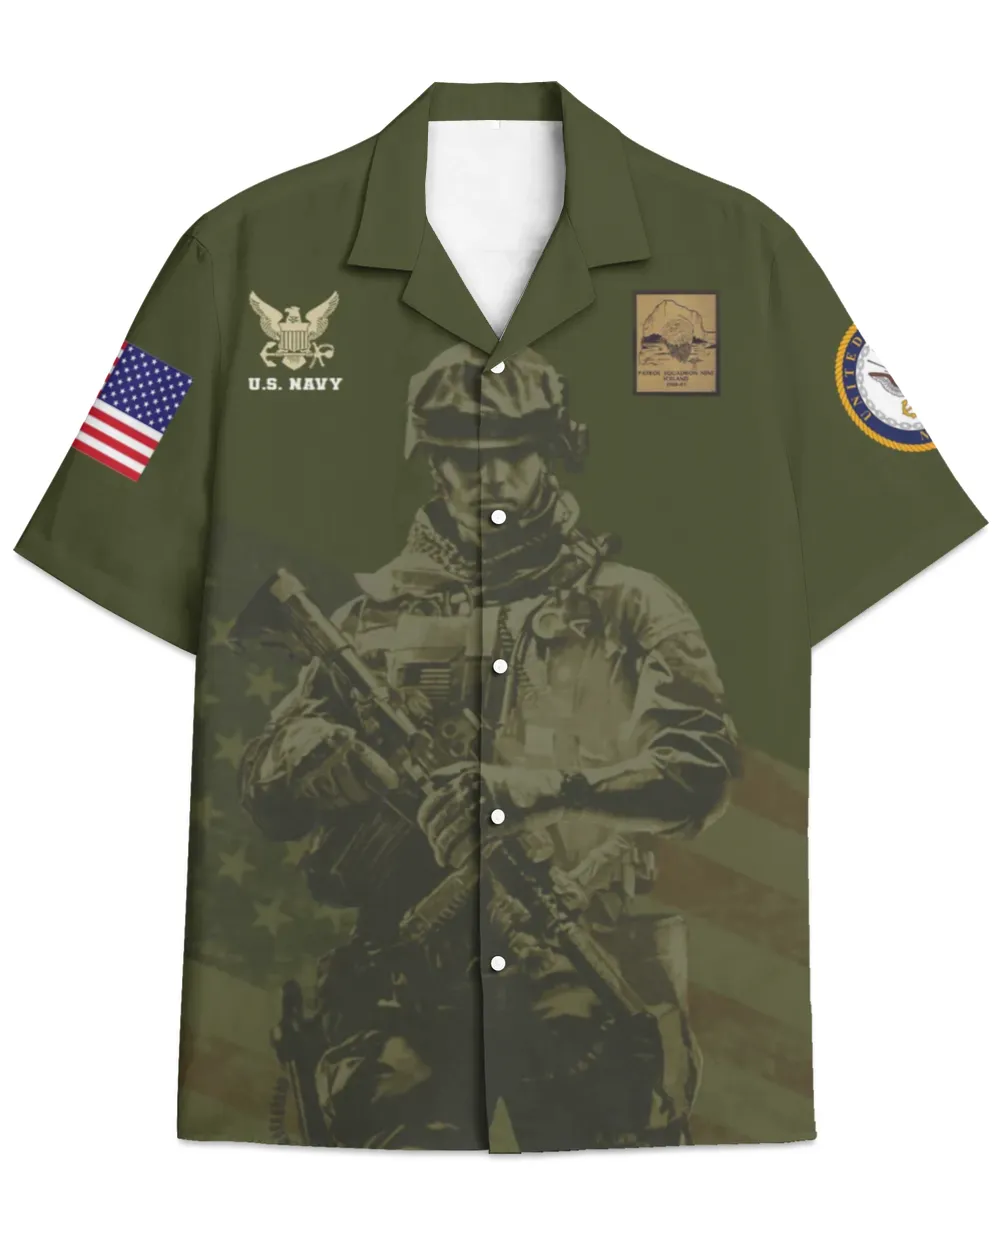 VP-9 Golden Eagles Patrol Nine 1 Hawaiian Shirt